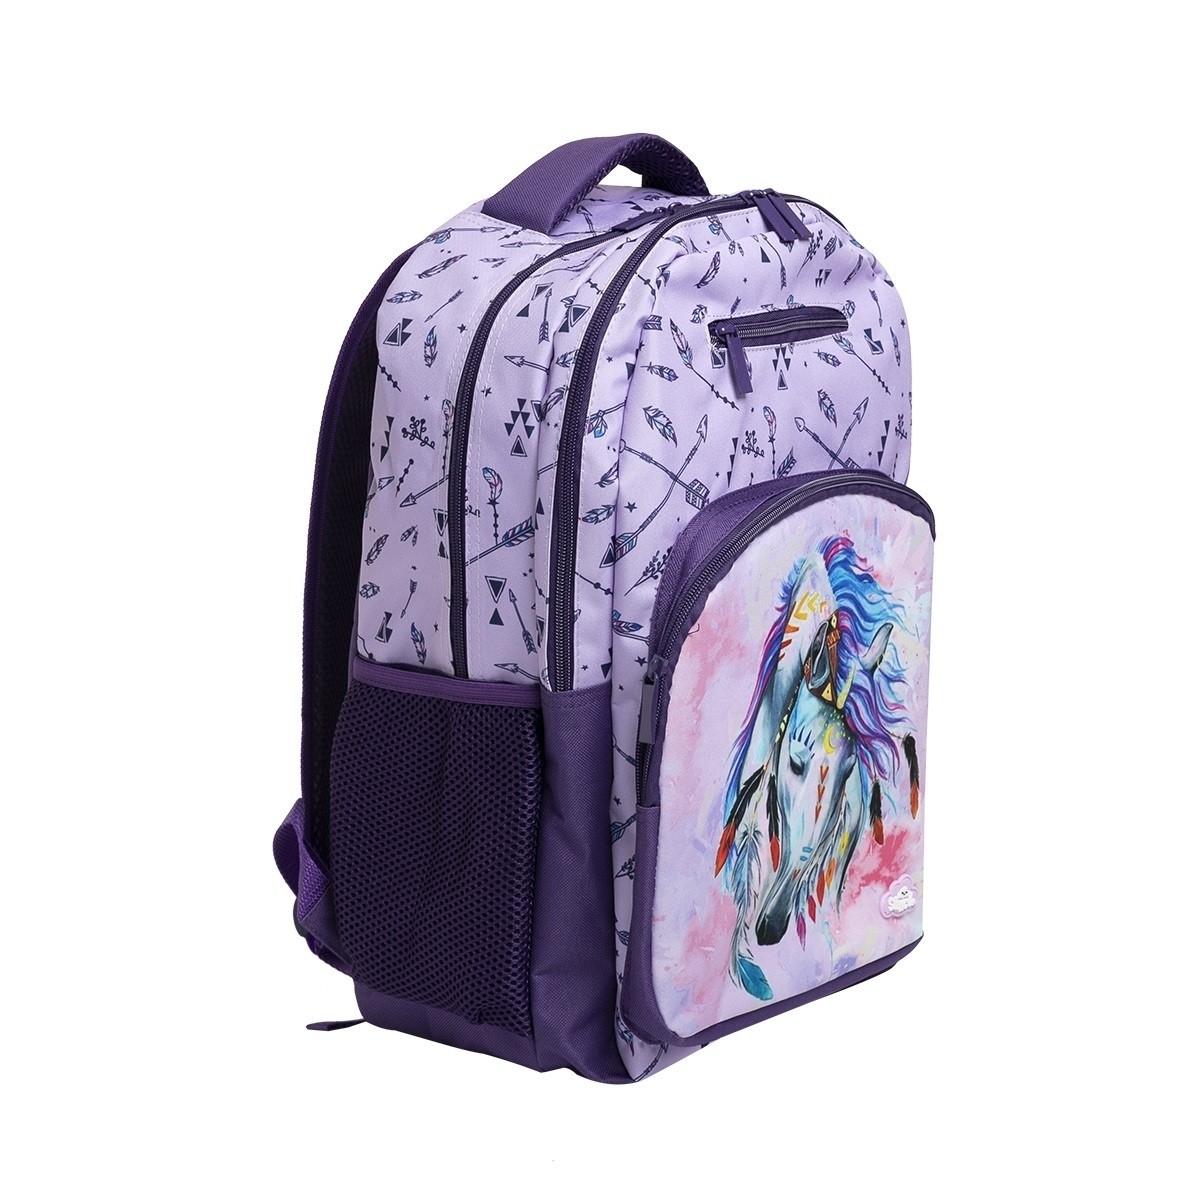 Triple Backpack - Dreamcatcher Horse - School Locker